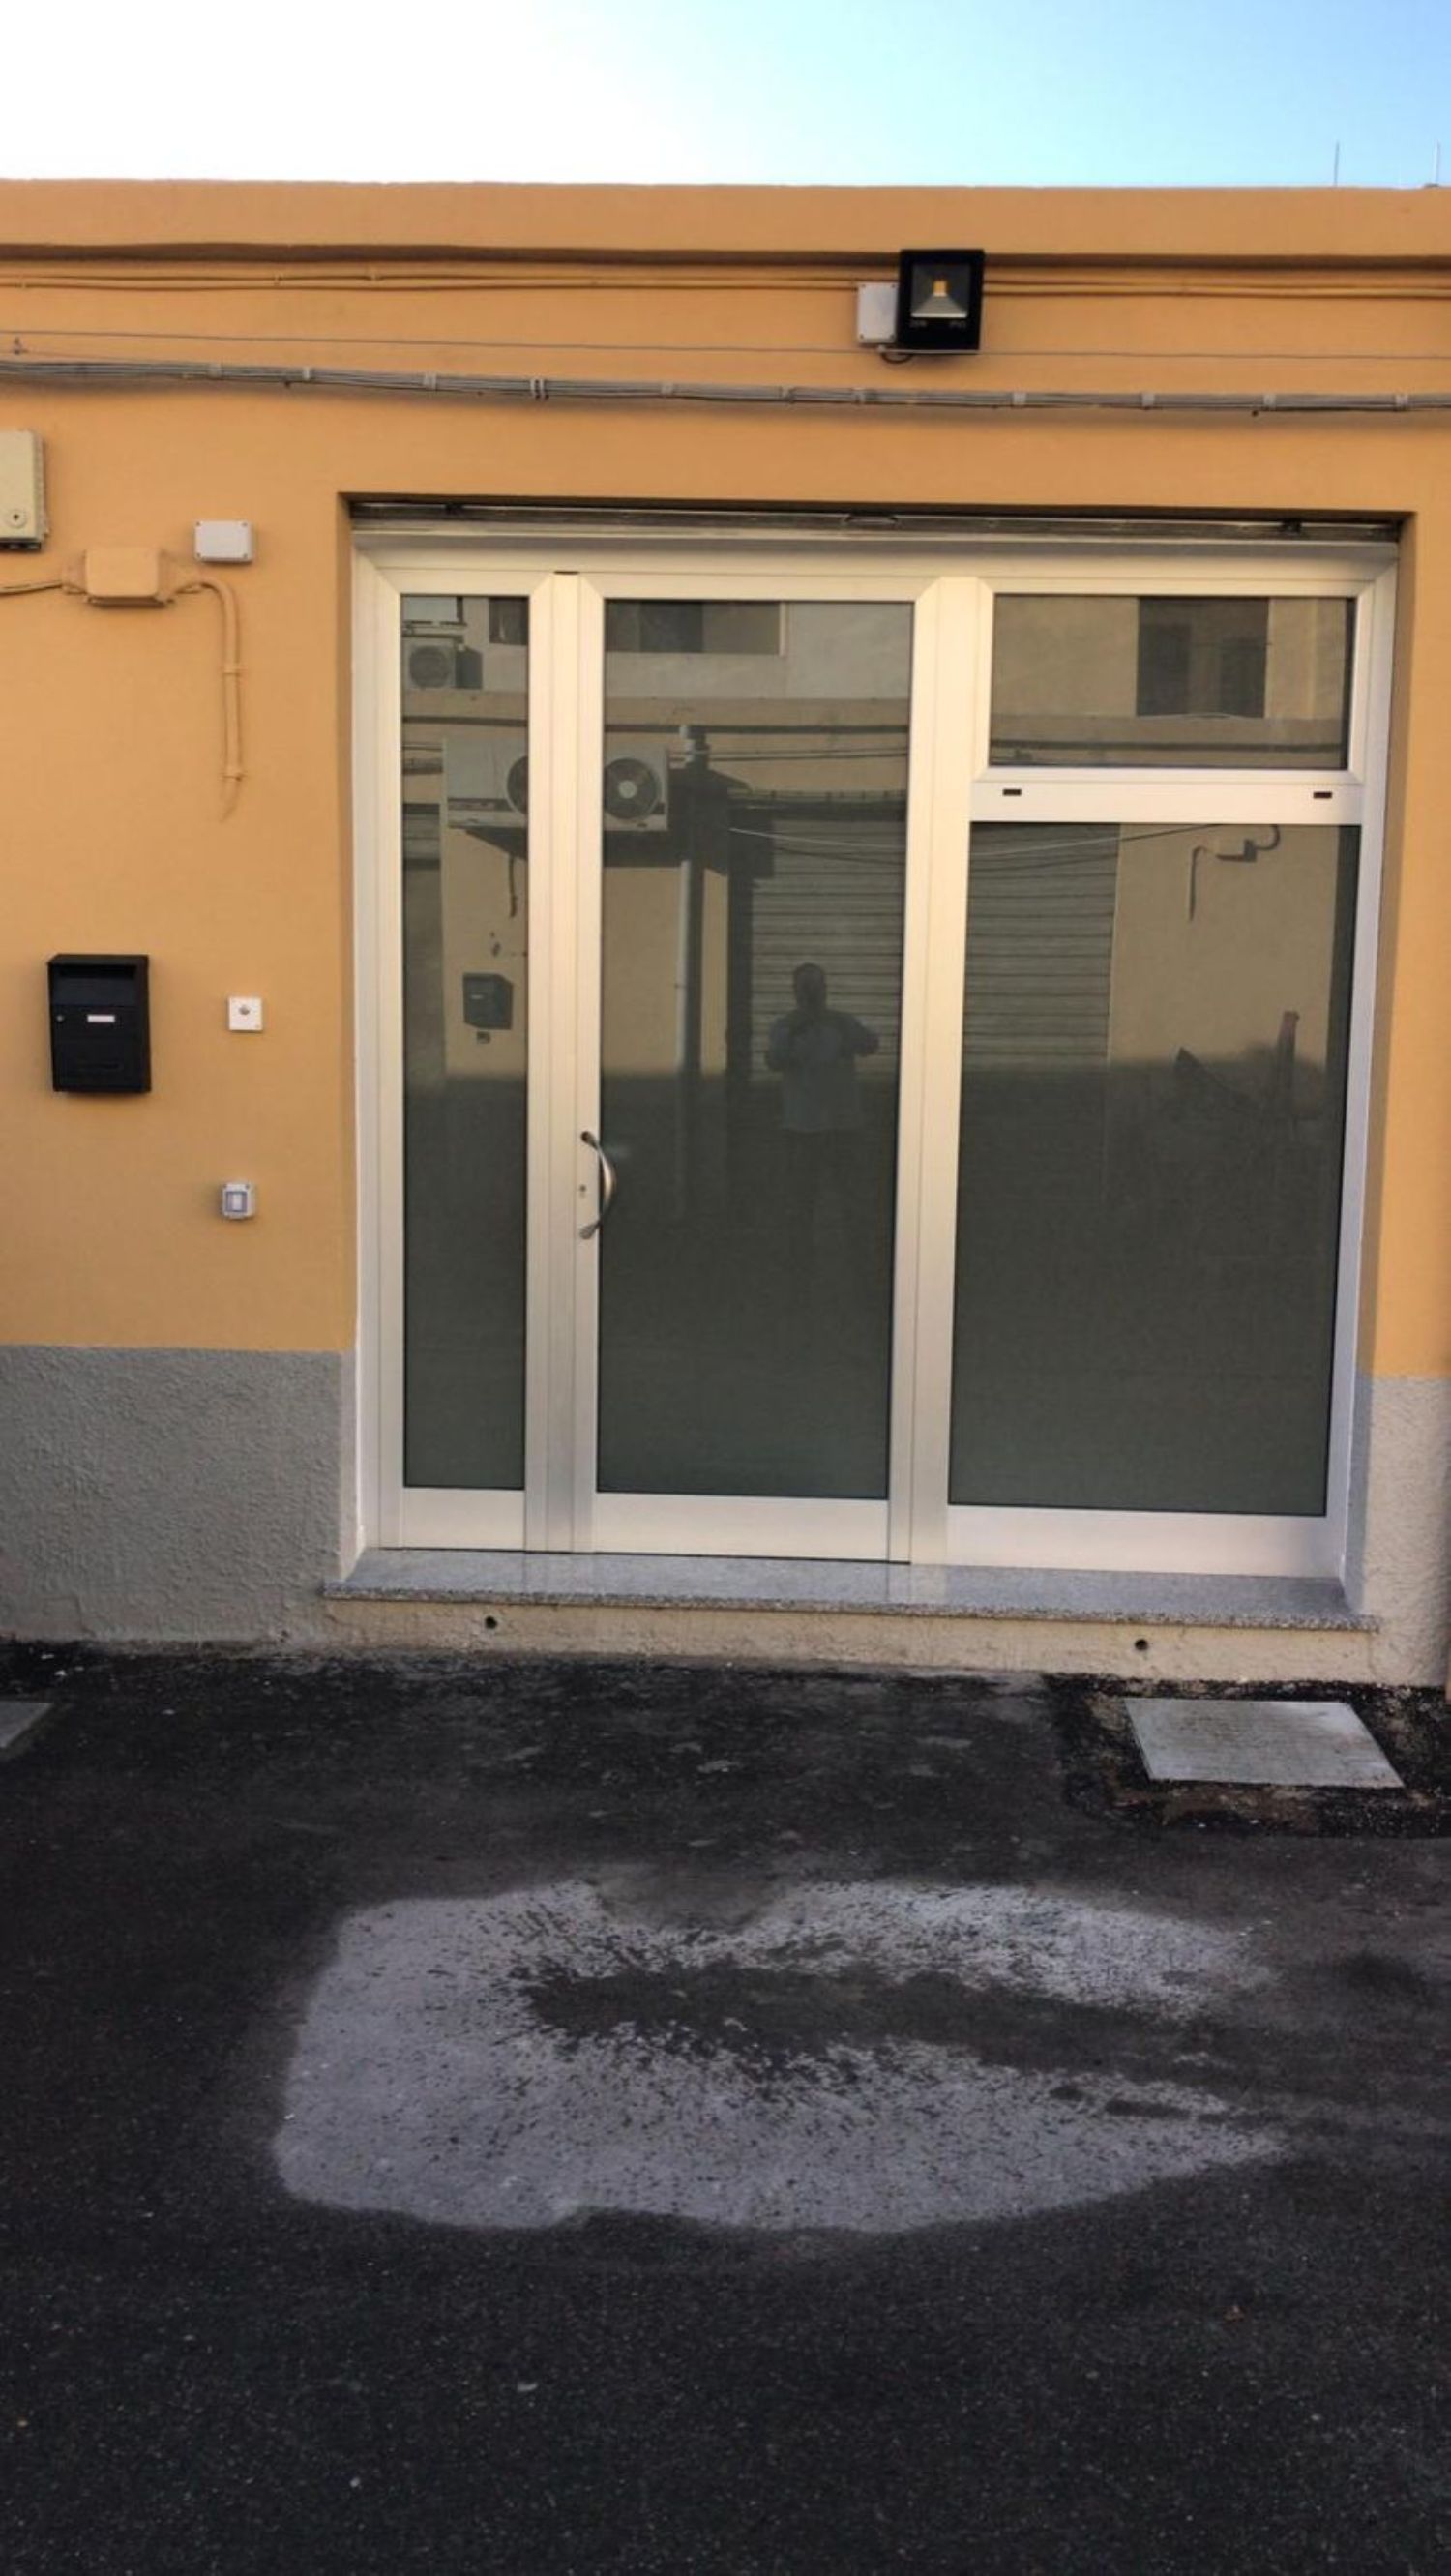 Immobile Commerciale in affitto a Cagliari, 9999 locali, prezzo € 700 | PortaleAgenzieImmobiliari.it